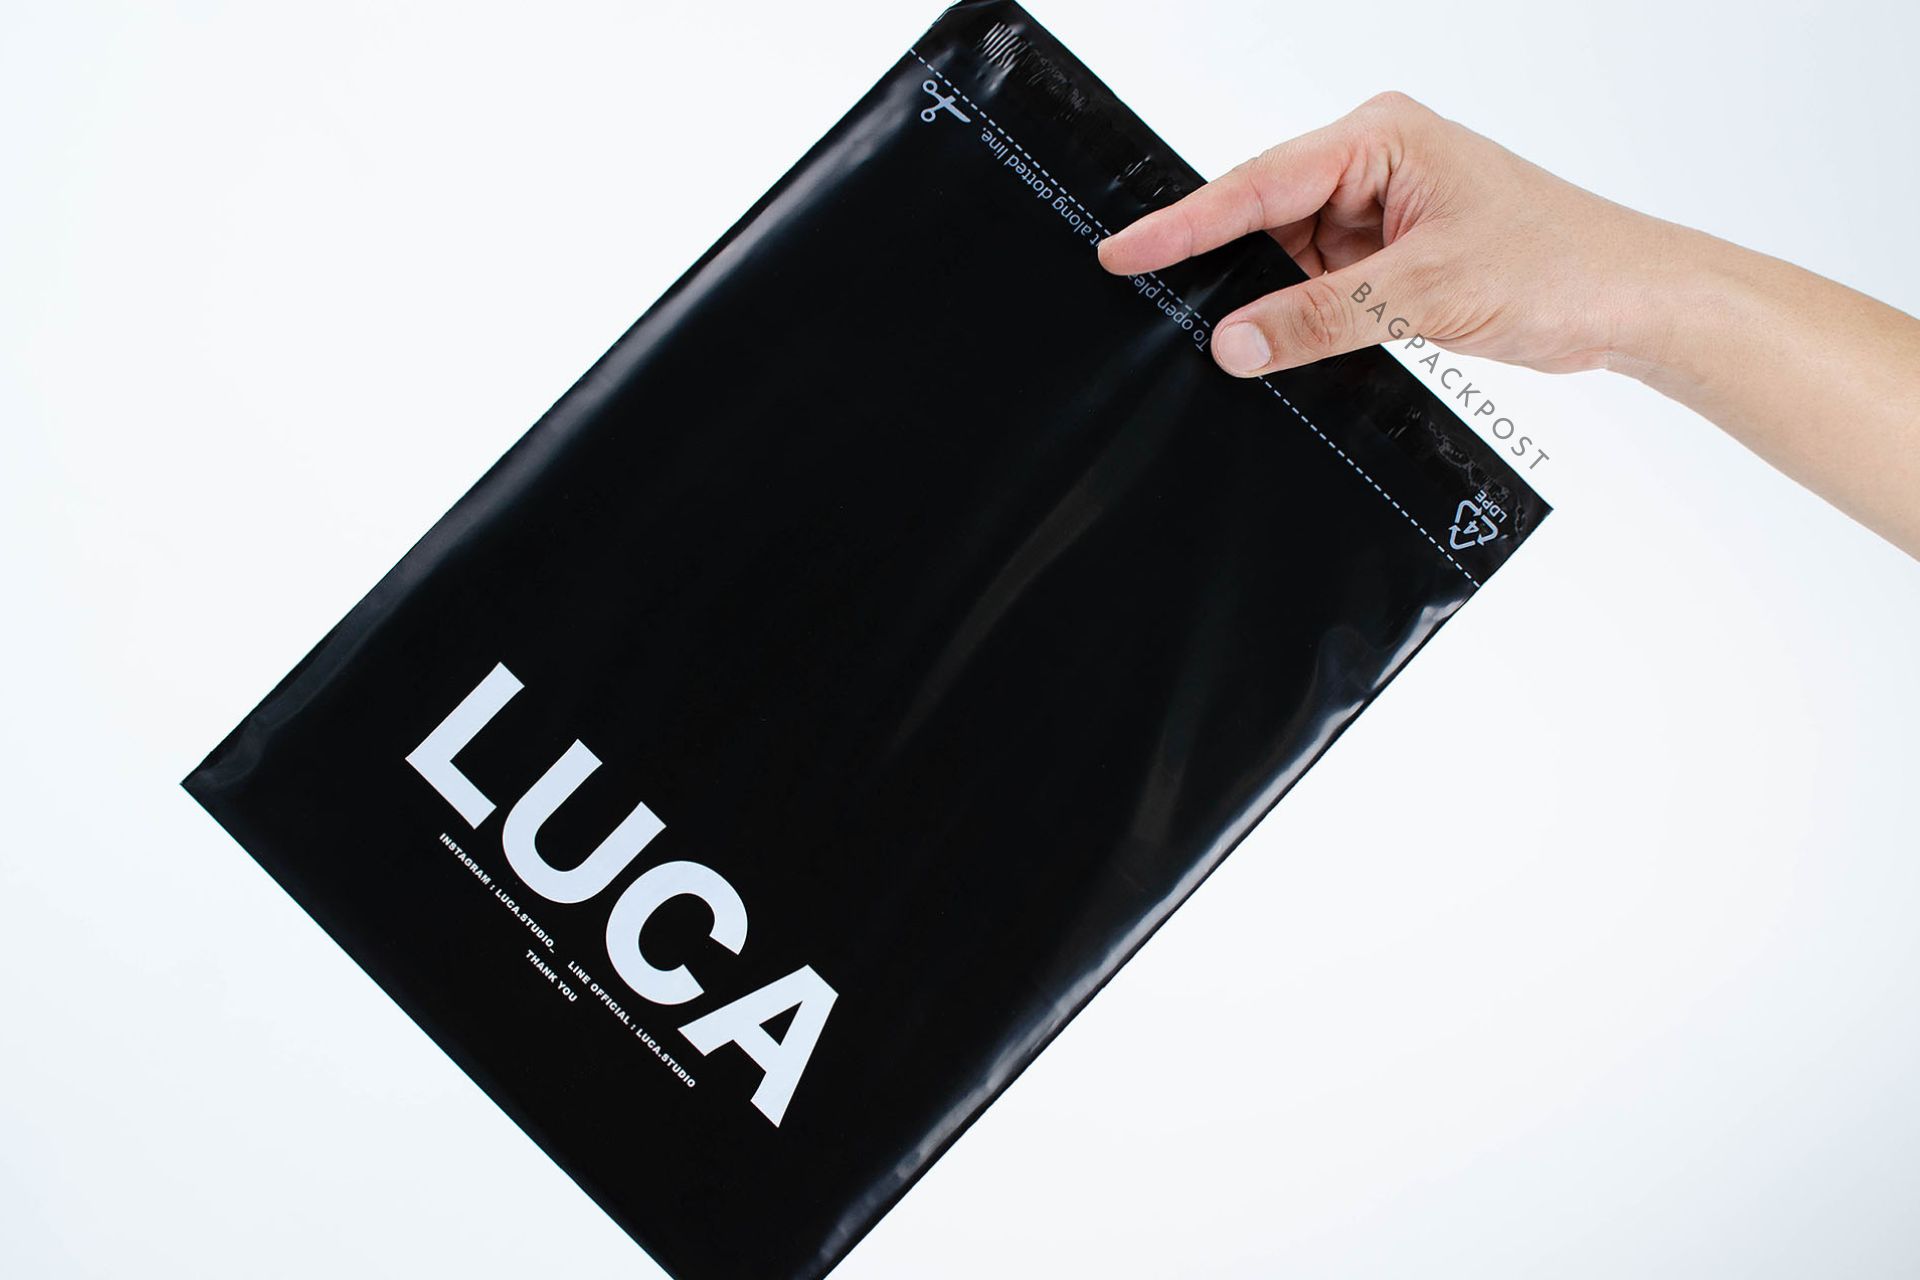 ผลิตถุงไปรษณีย์ ถุงพัสดุ ซองไปรษณีย์พิมพ์ลาย Luca ซองไปรษณีย์สีดำ ถุงไปรษณีย์พิมพ์ลาย 4 BagPackPost